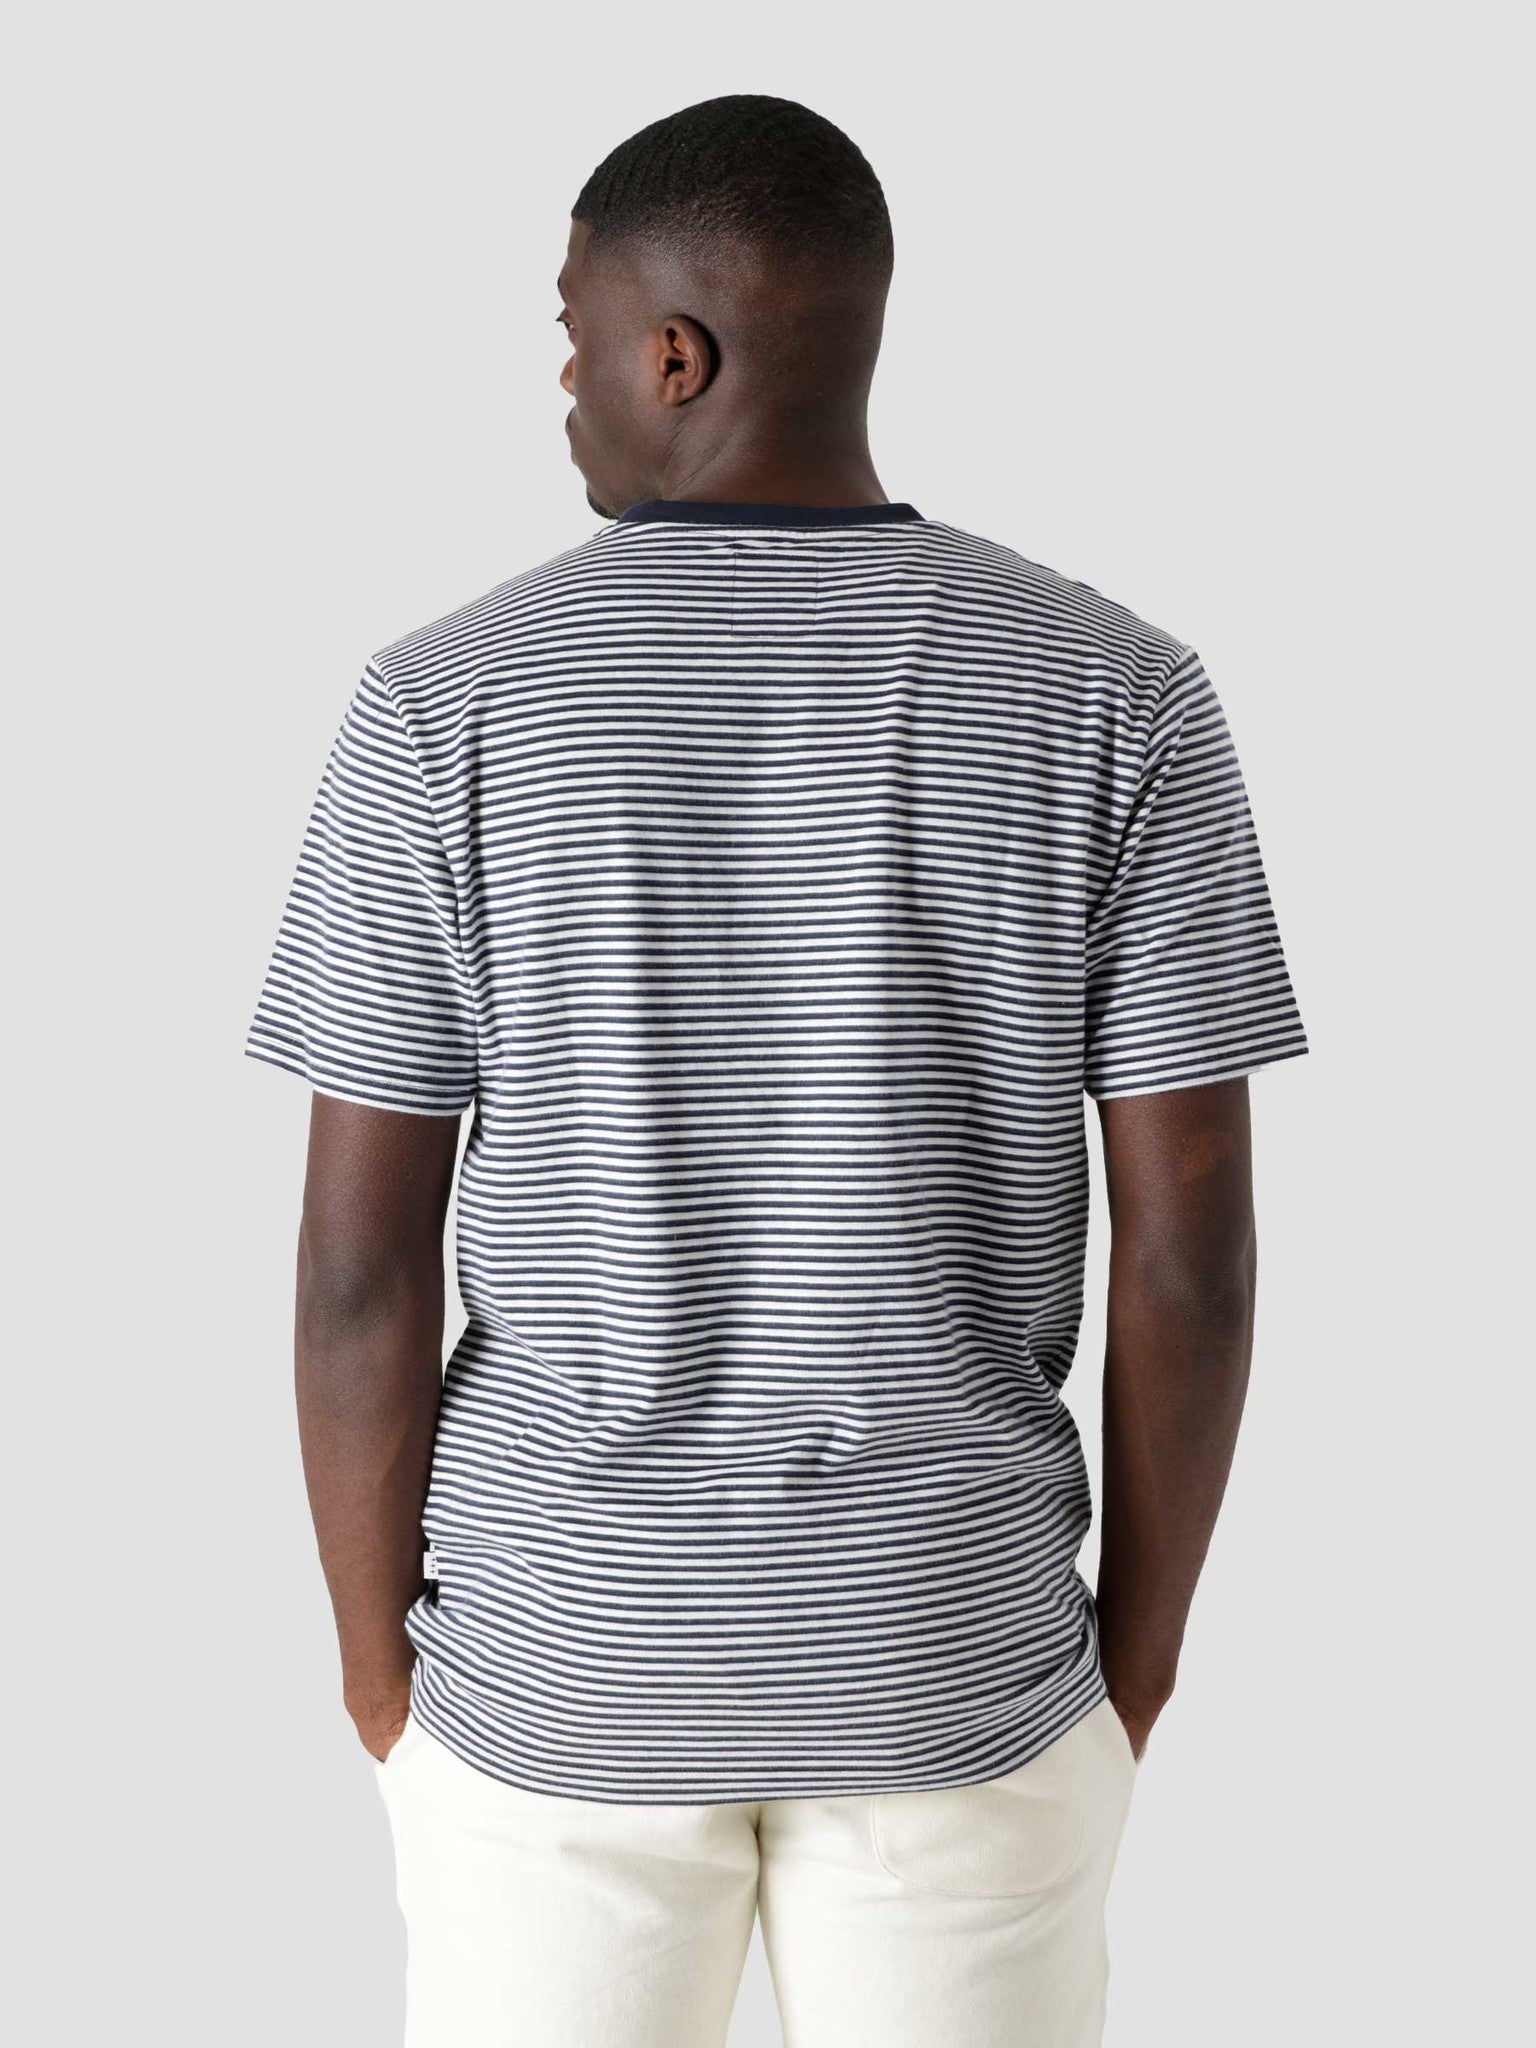 QB601 Stripe T-shirt Navy White